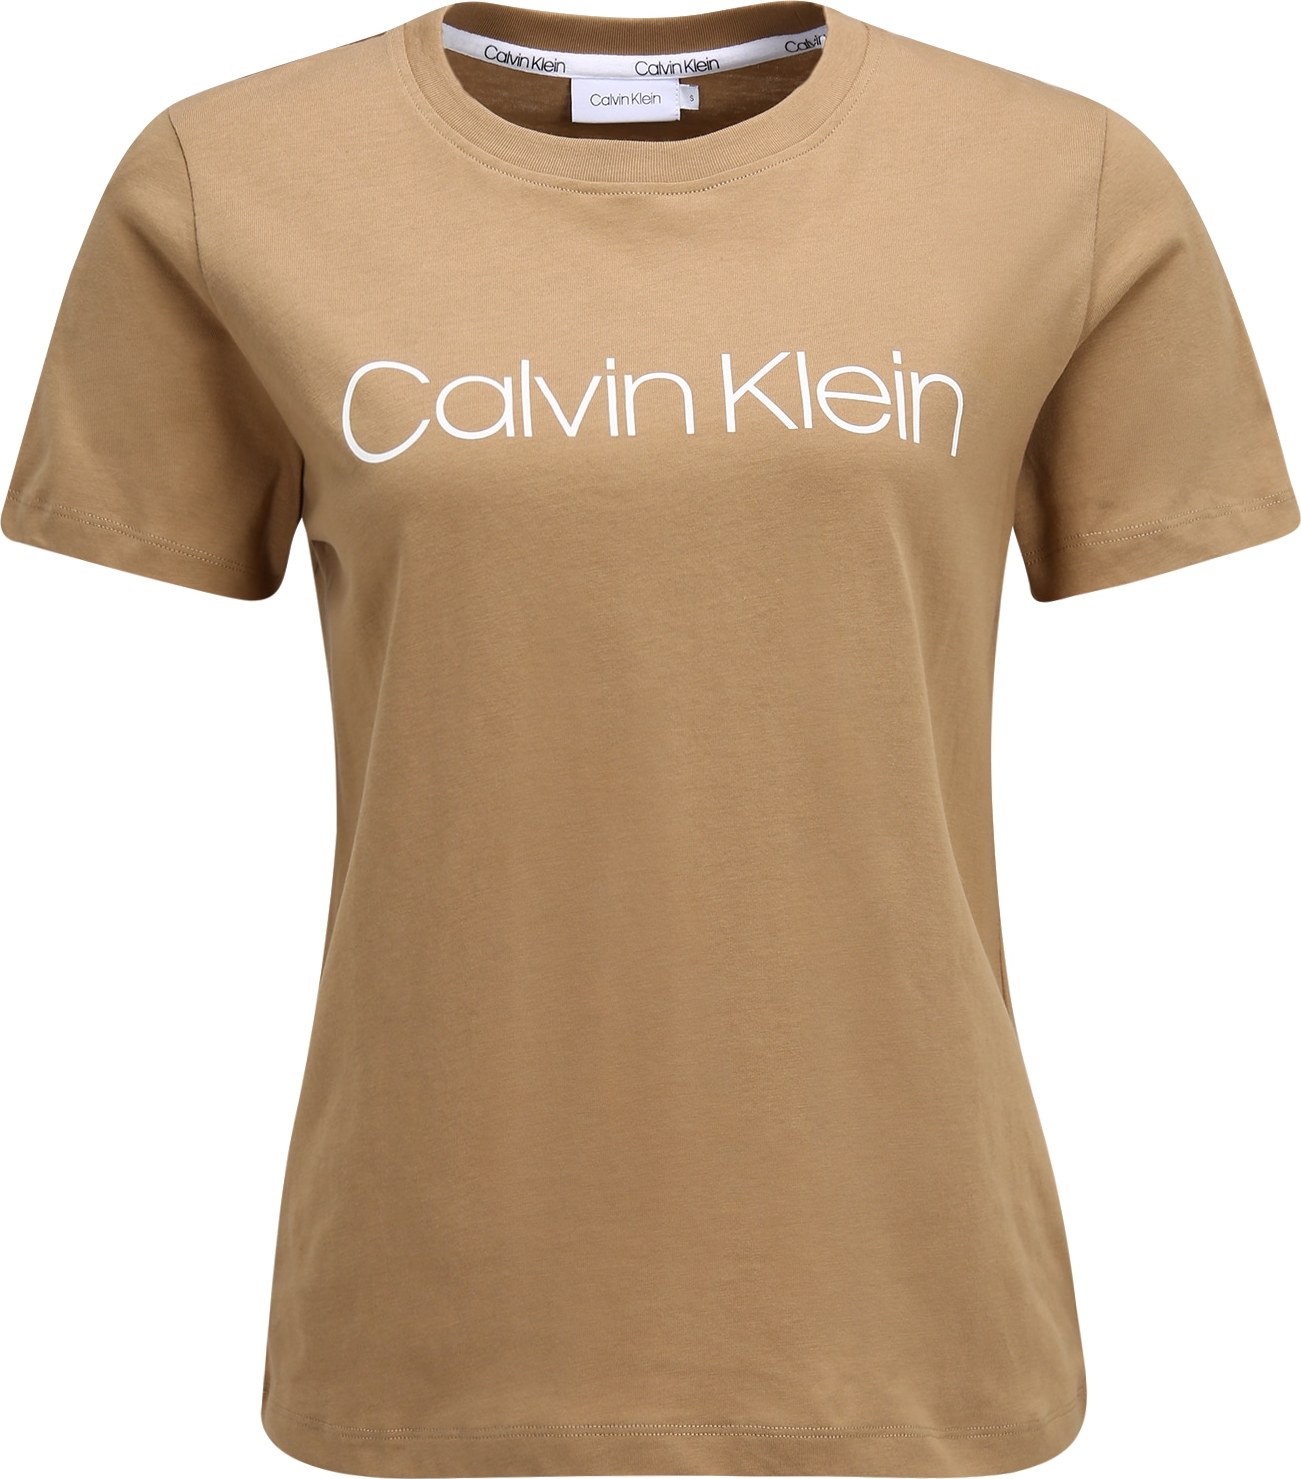 Tričko Calvin Klein khaki / bílá